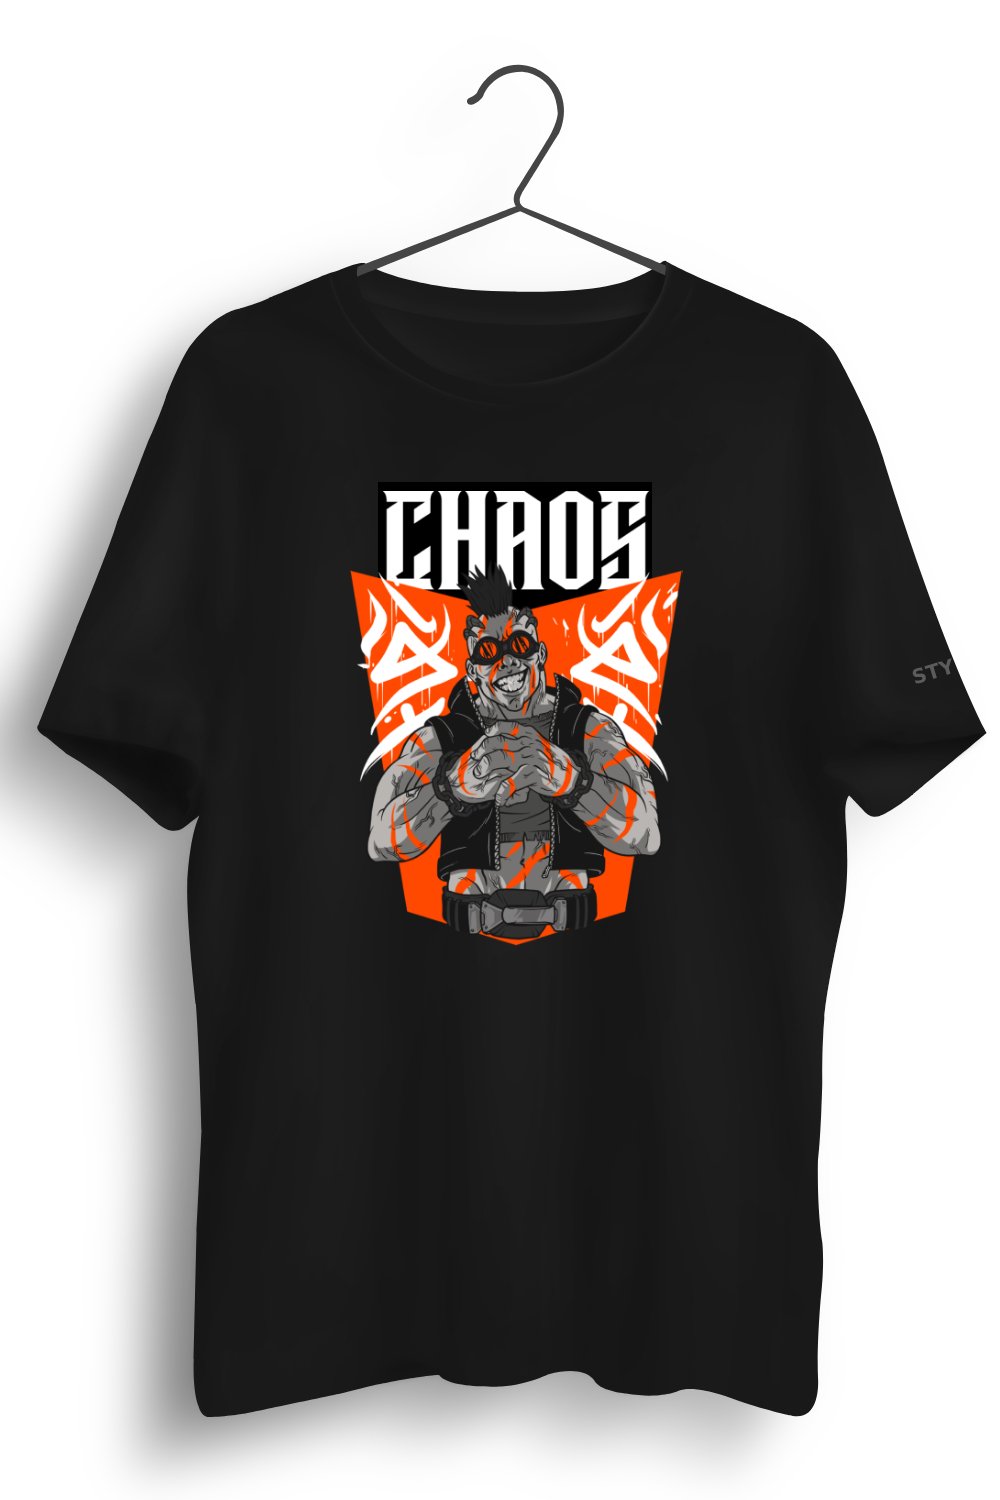 Chaos Graphic Printed Black Tshirt